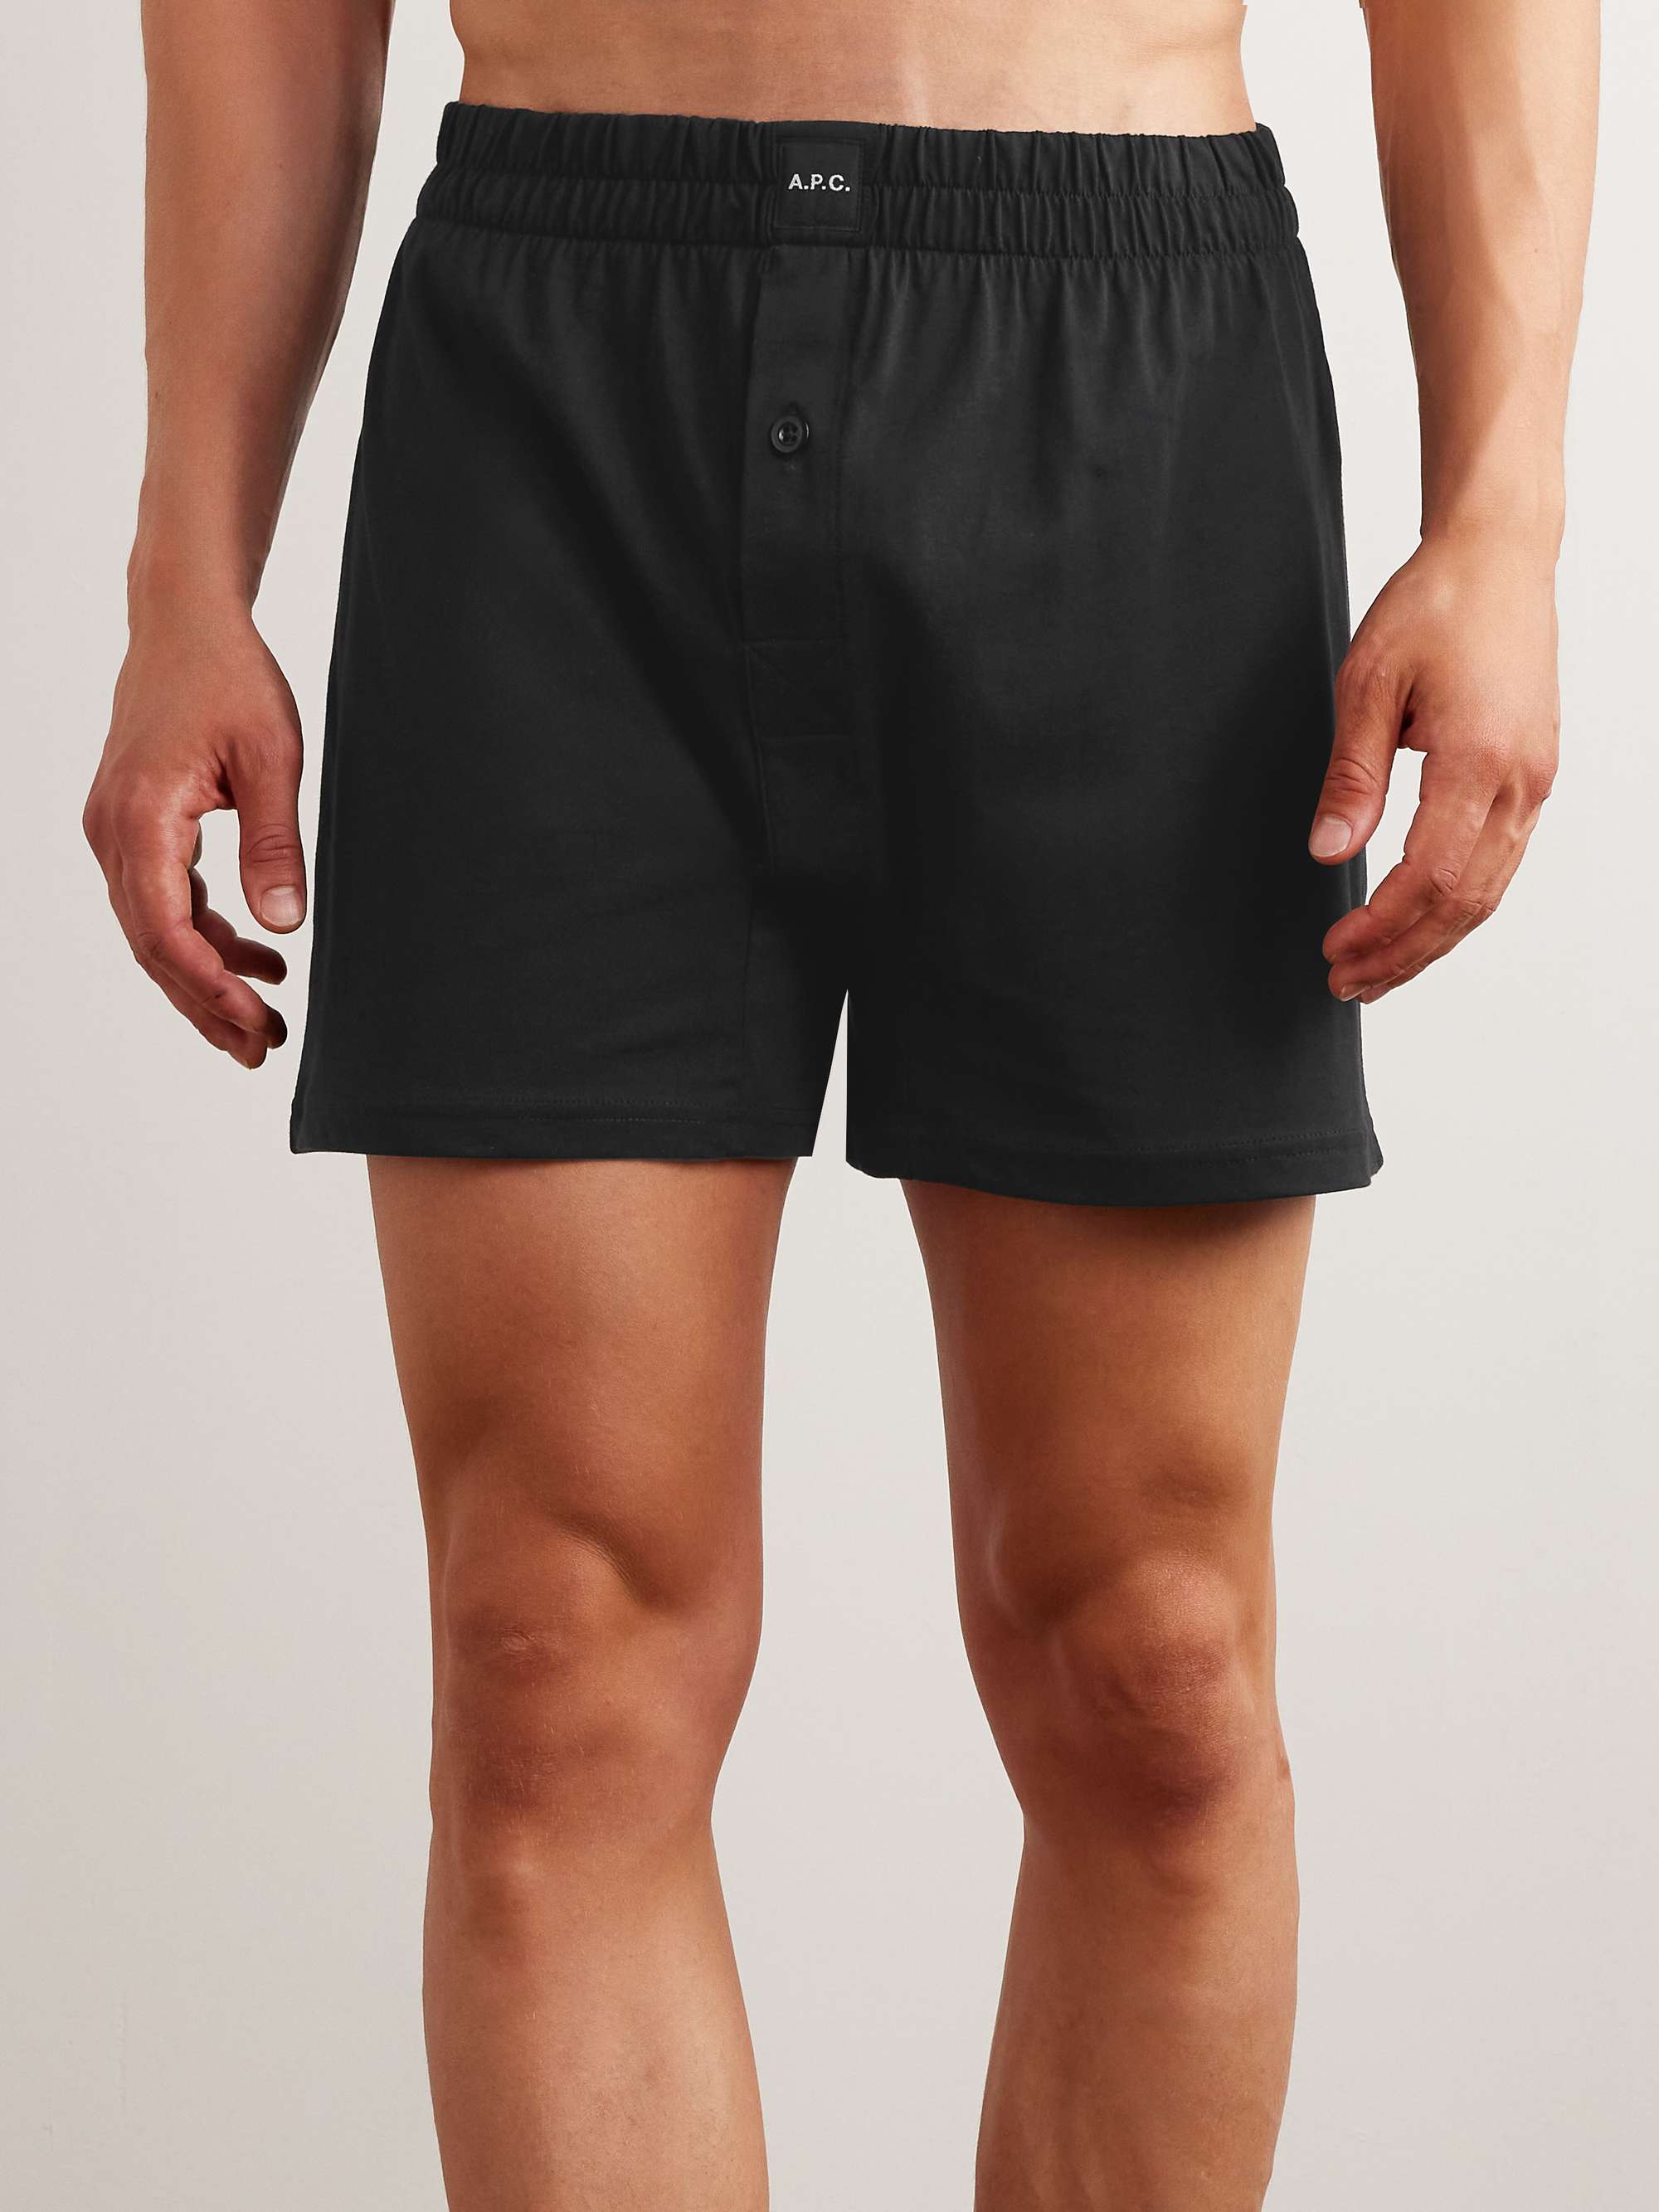 A.P.C. Cotton-Jersey Boxer Shorts for Men